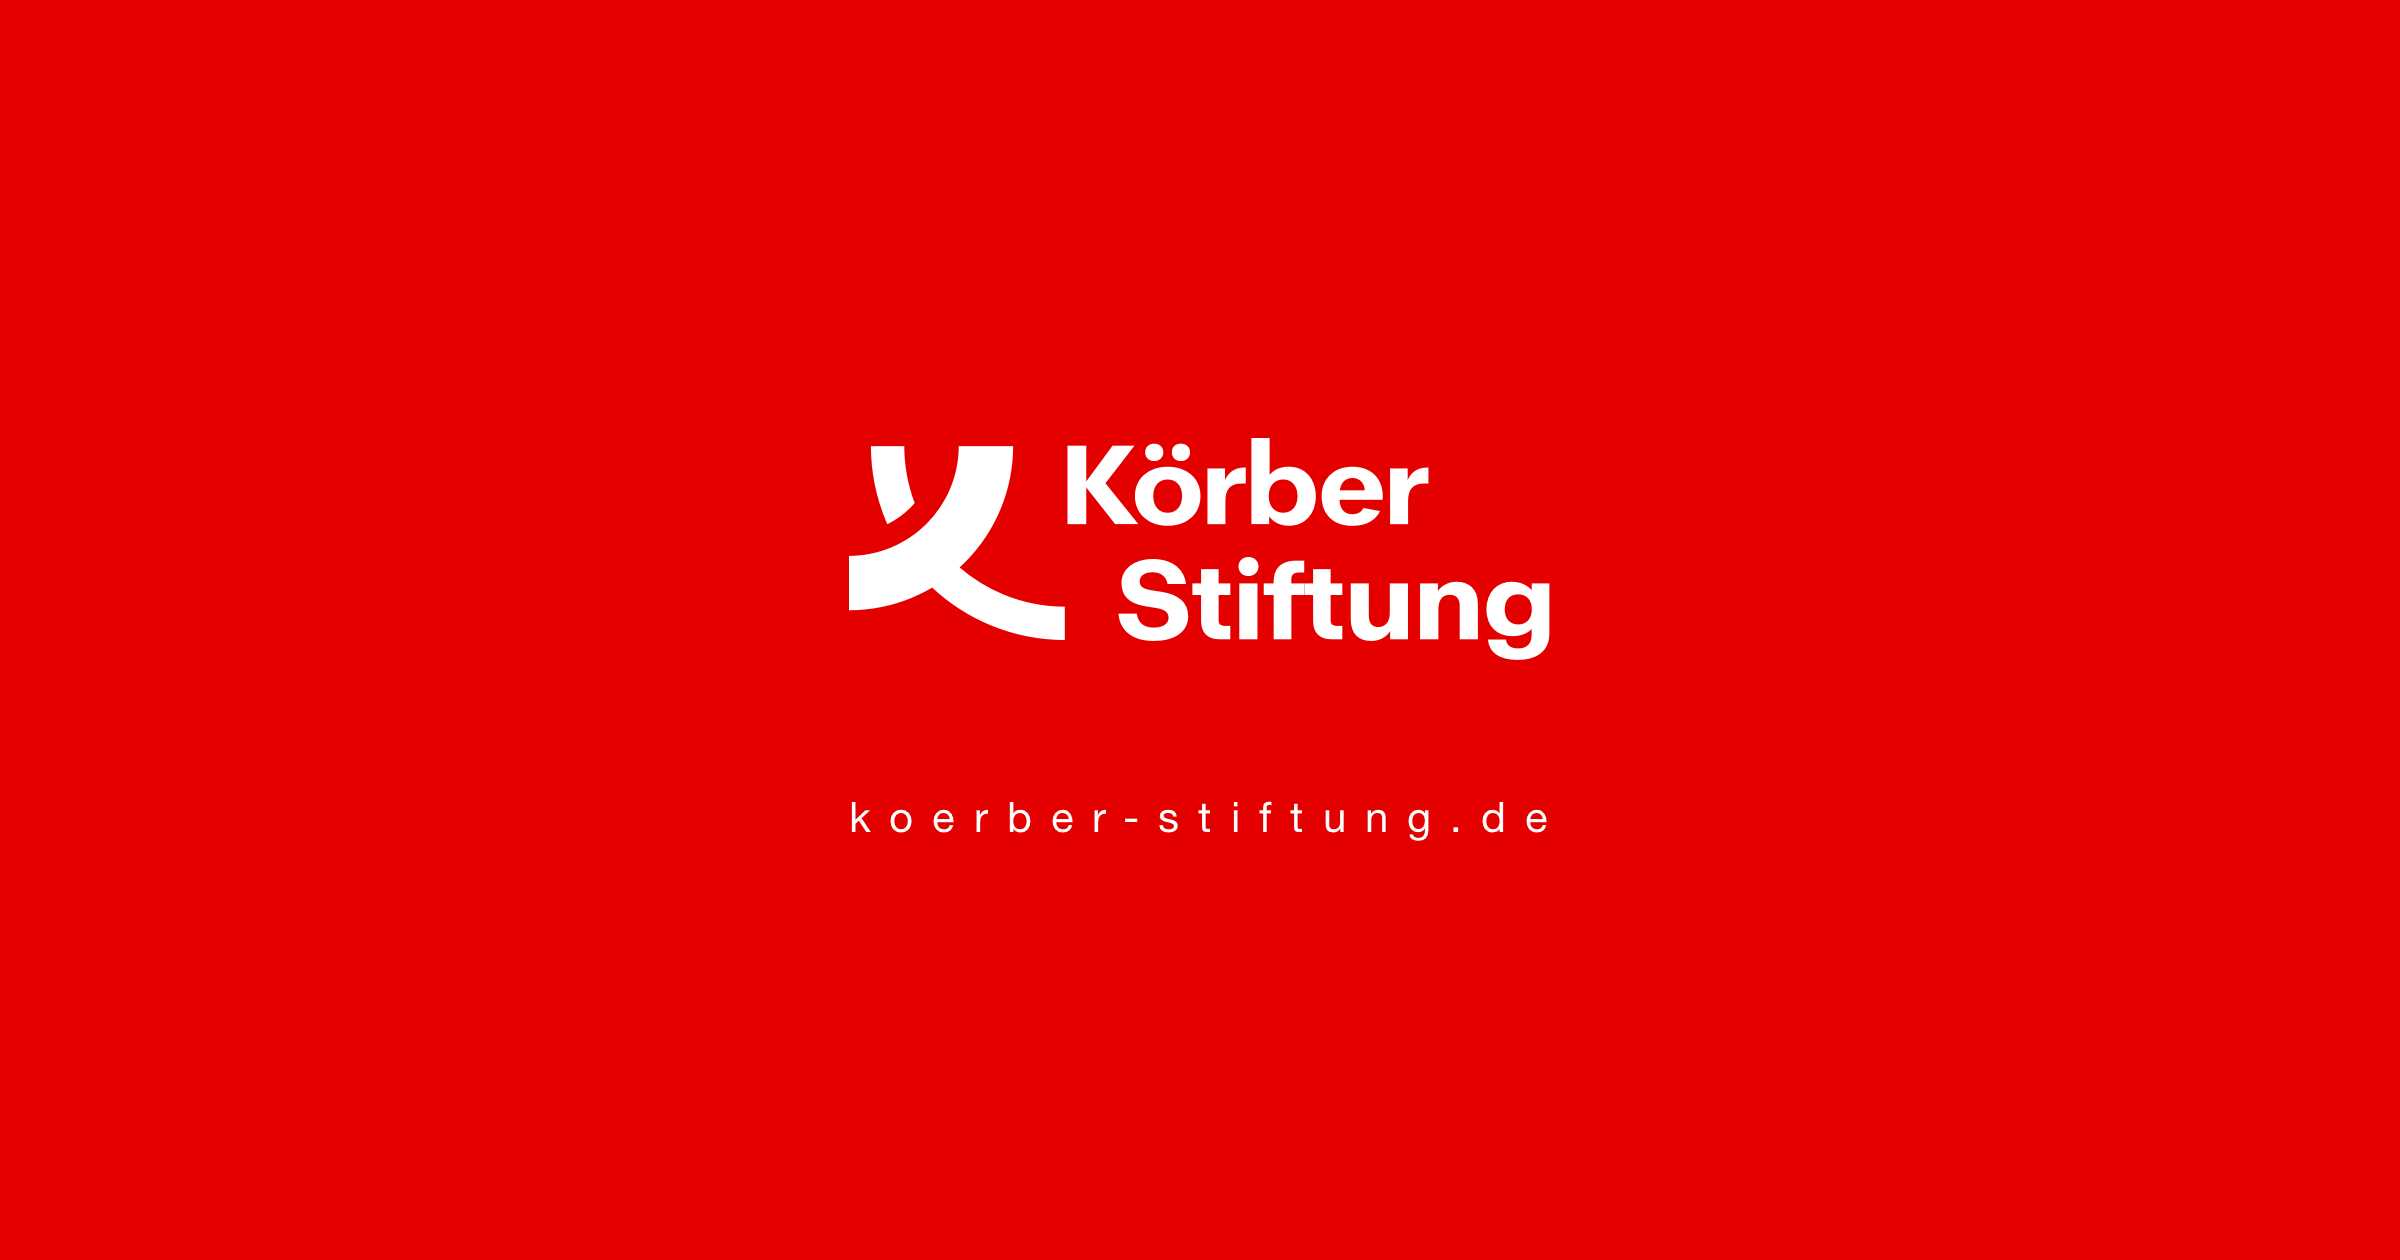 (c) Koerber-stiftung.de